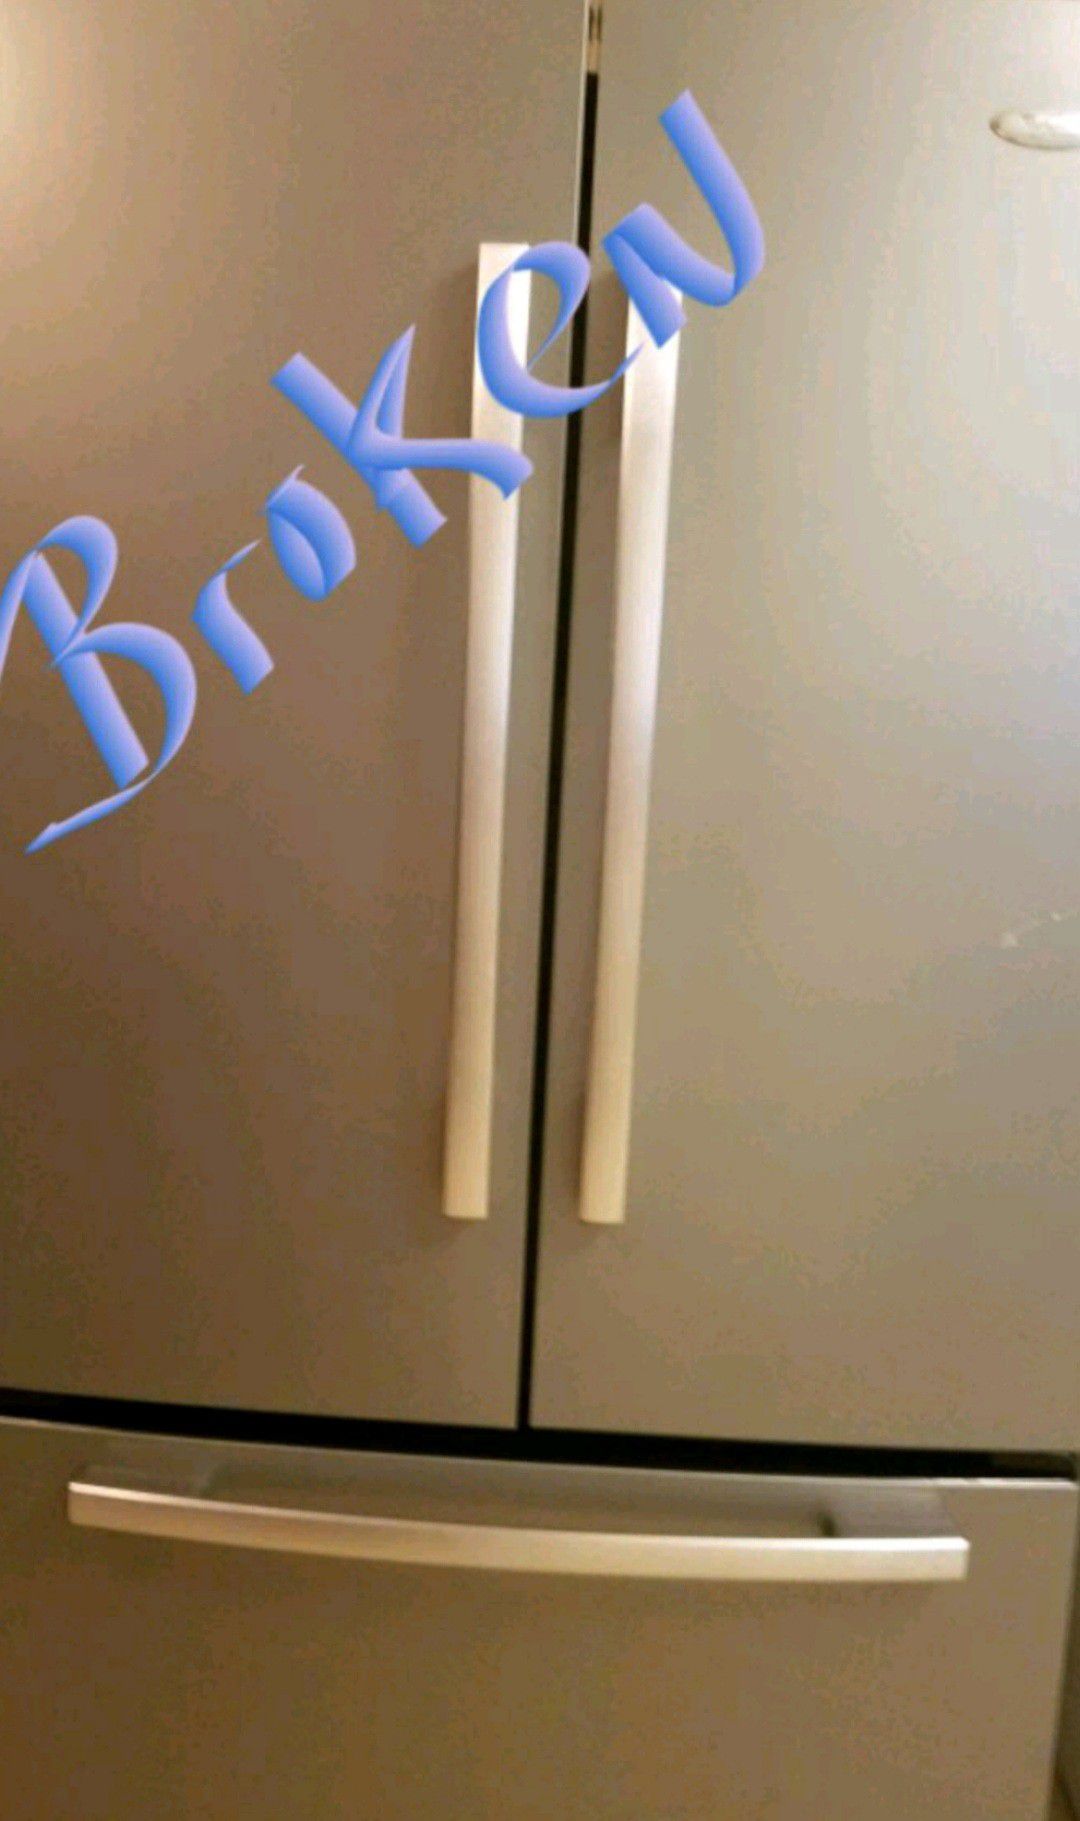 Broken refrigerator